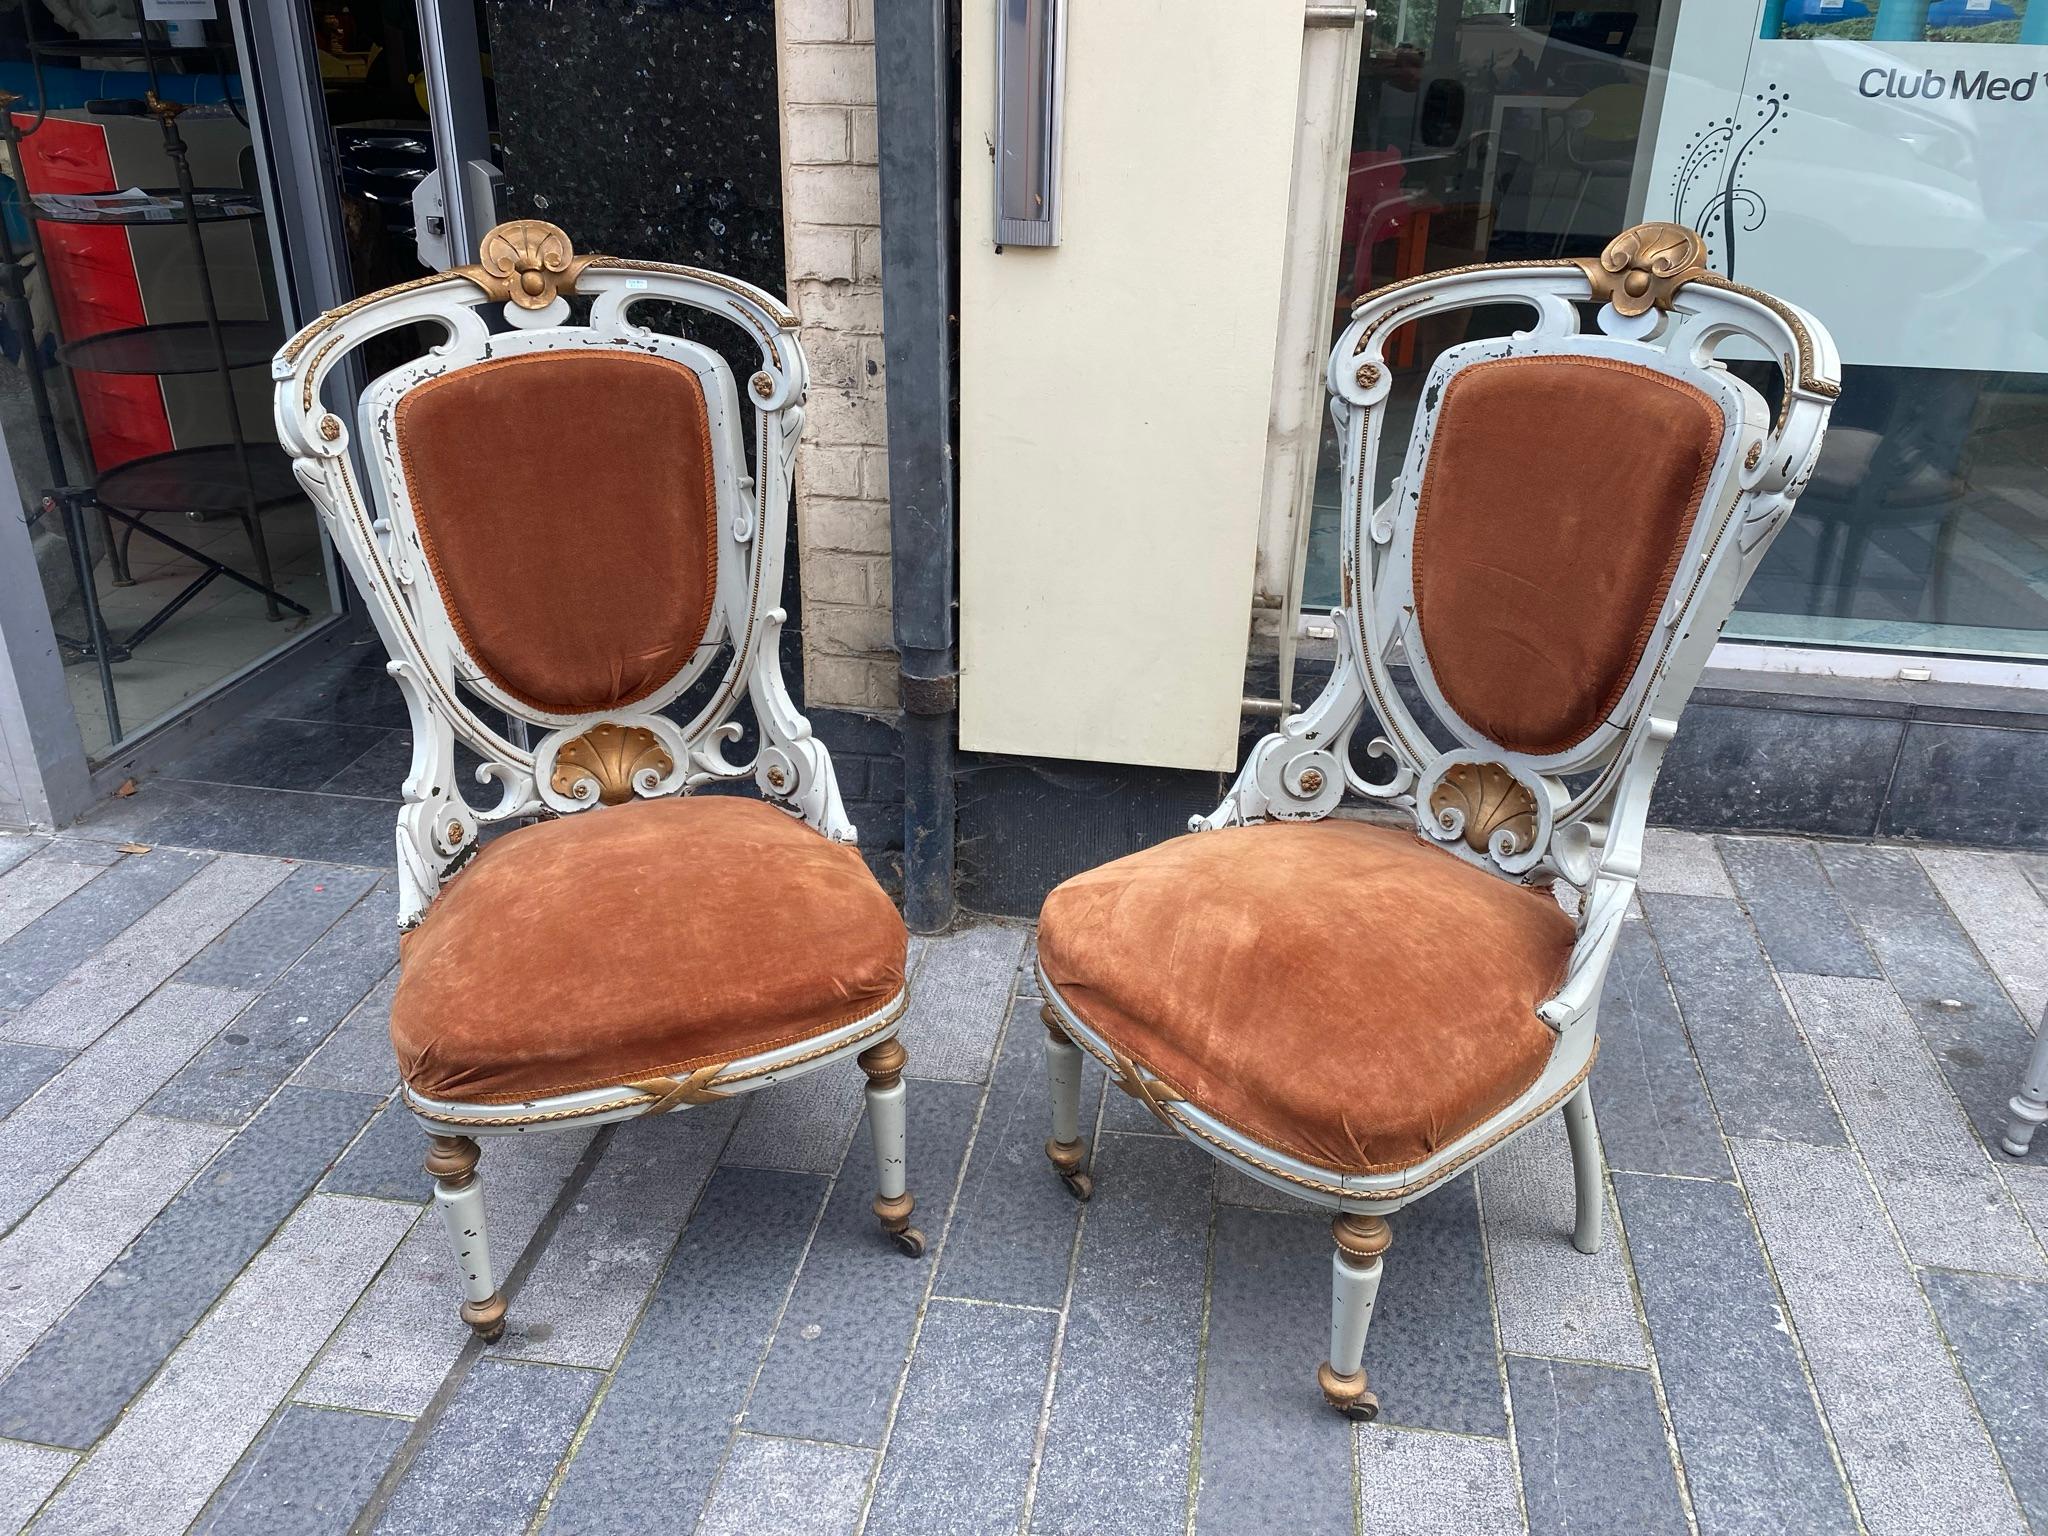 2 Jugendstil-Sessel, um 1900
Aus lackiertem Holz, vergoldetem Holz und Bronze 
Keine Brüche, aber es gibt einige Risse.